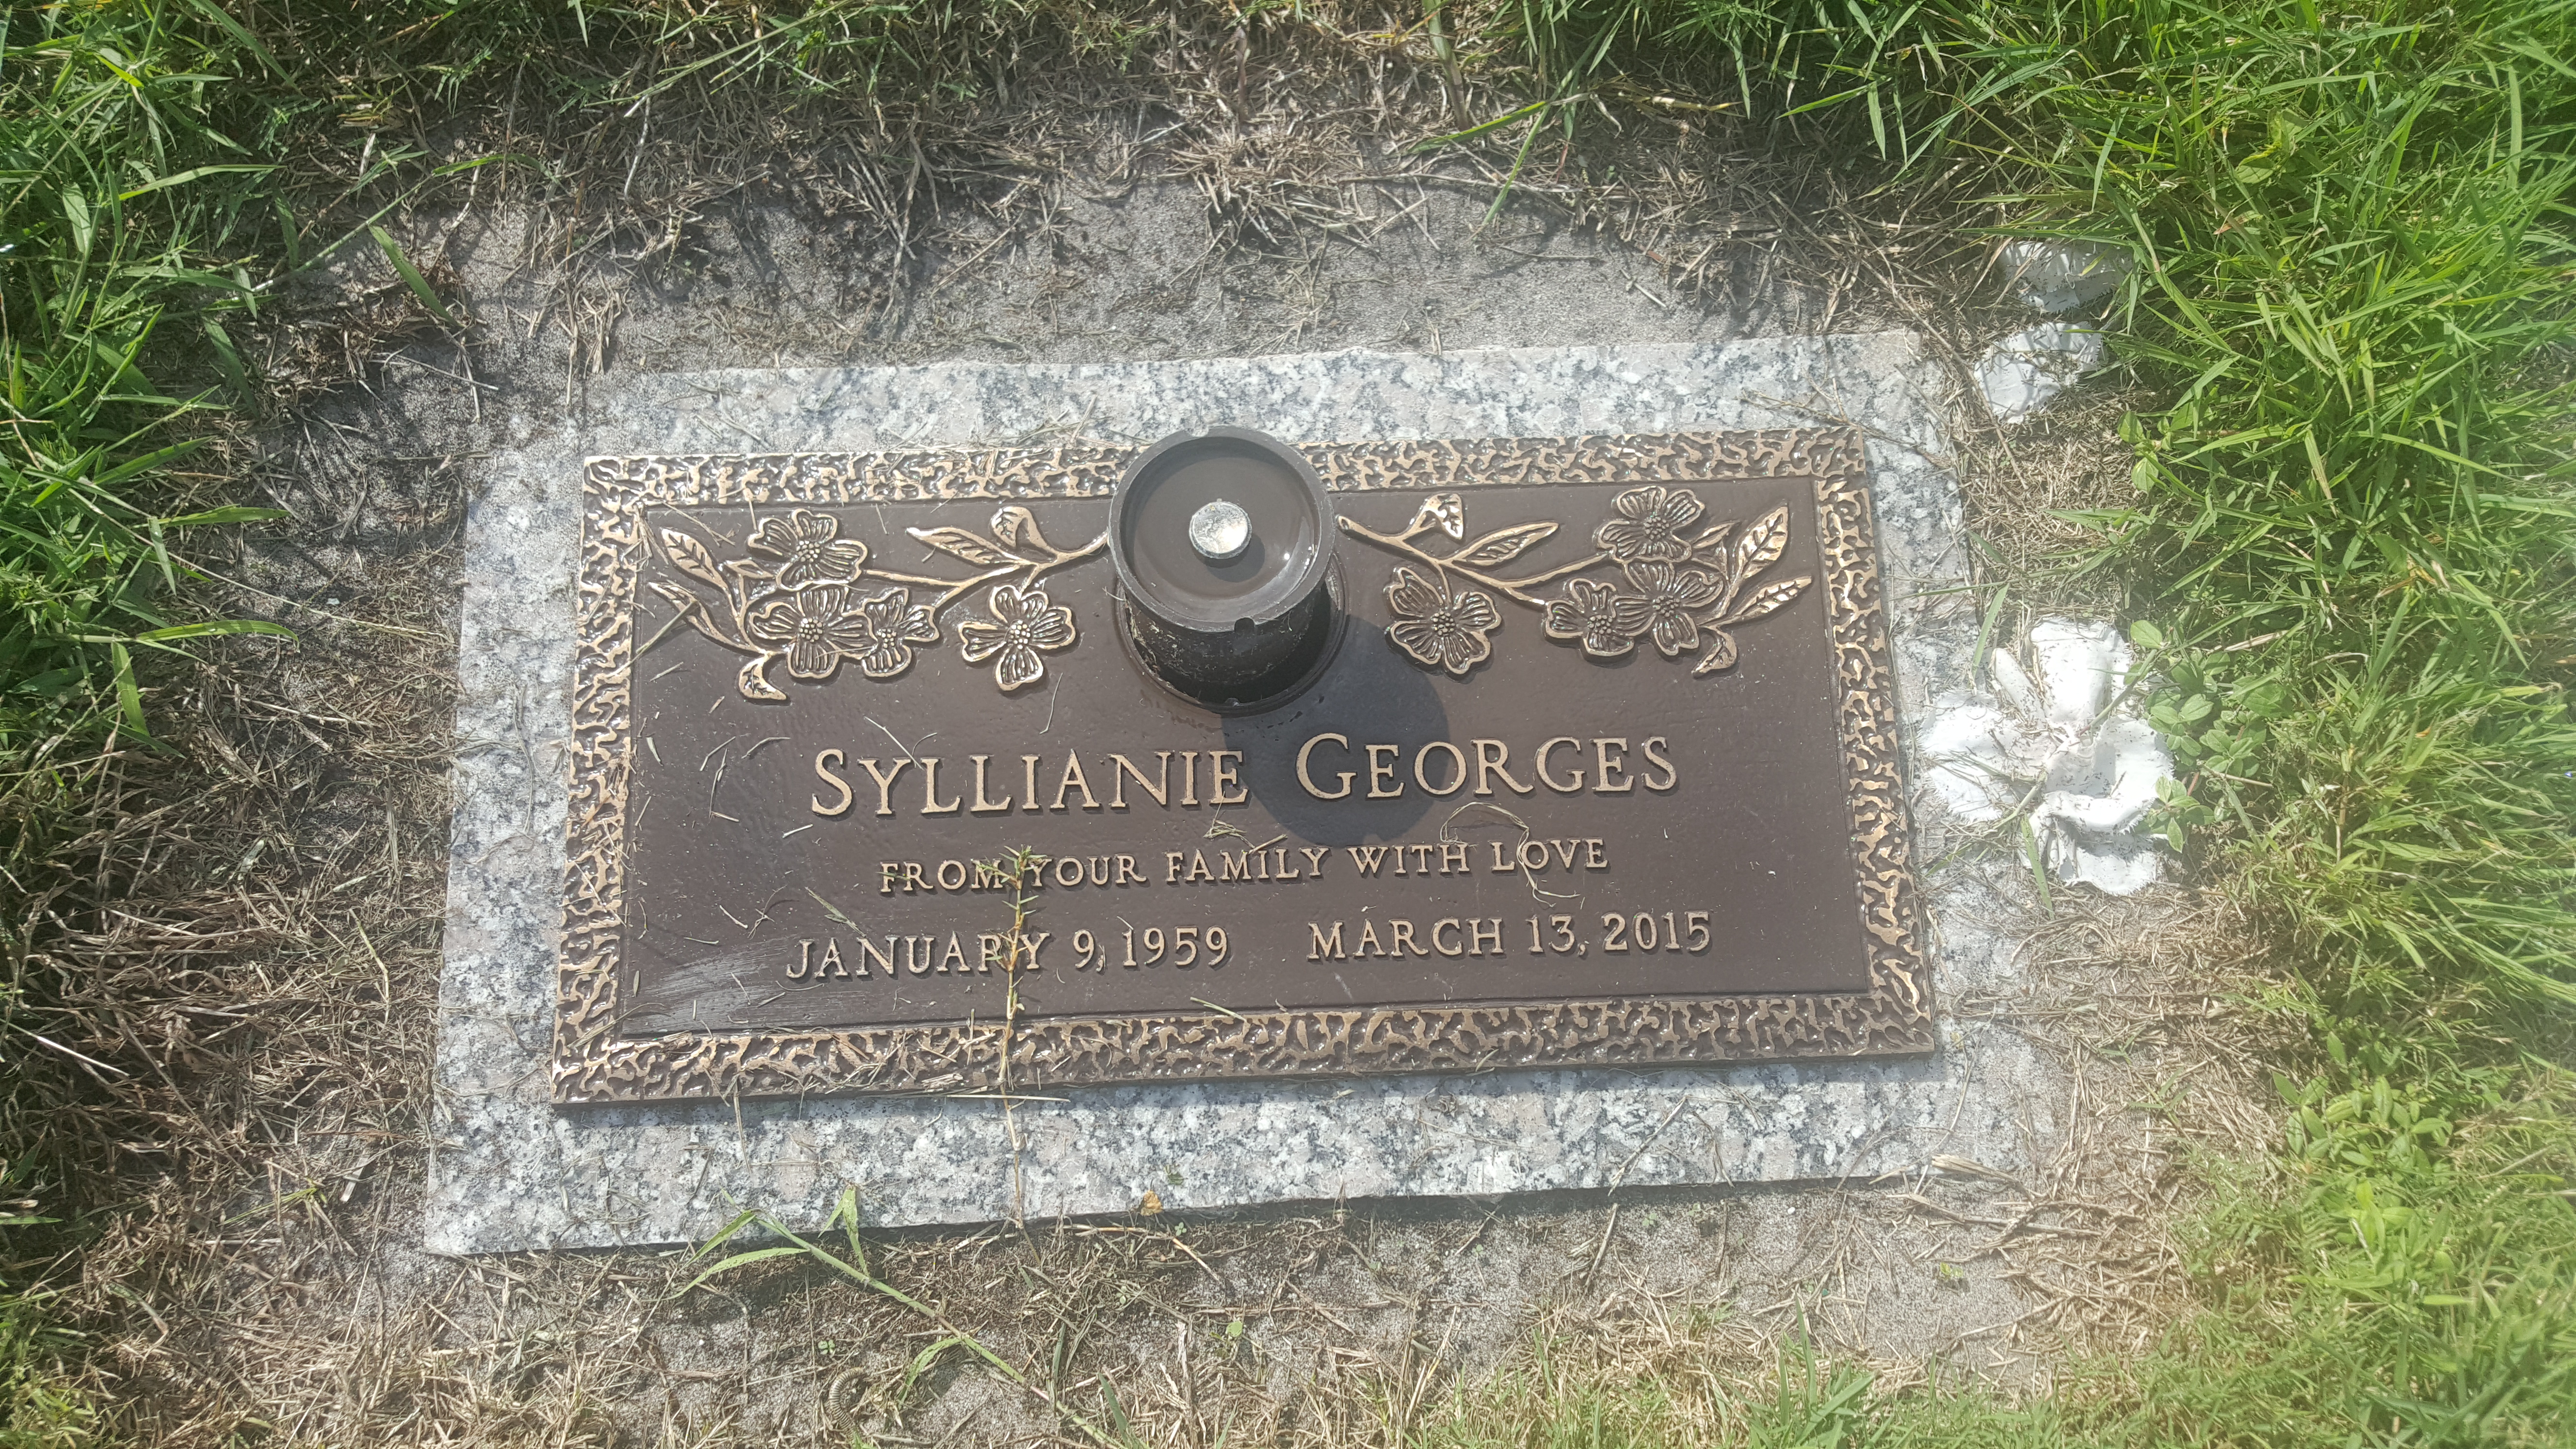 Syllianie Georges